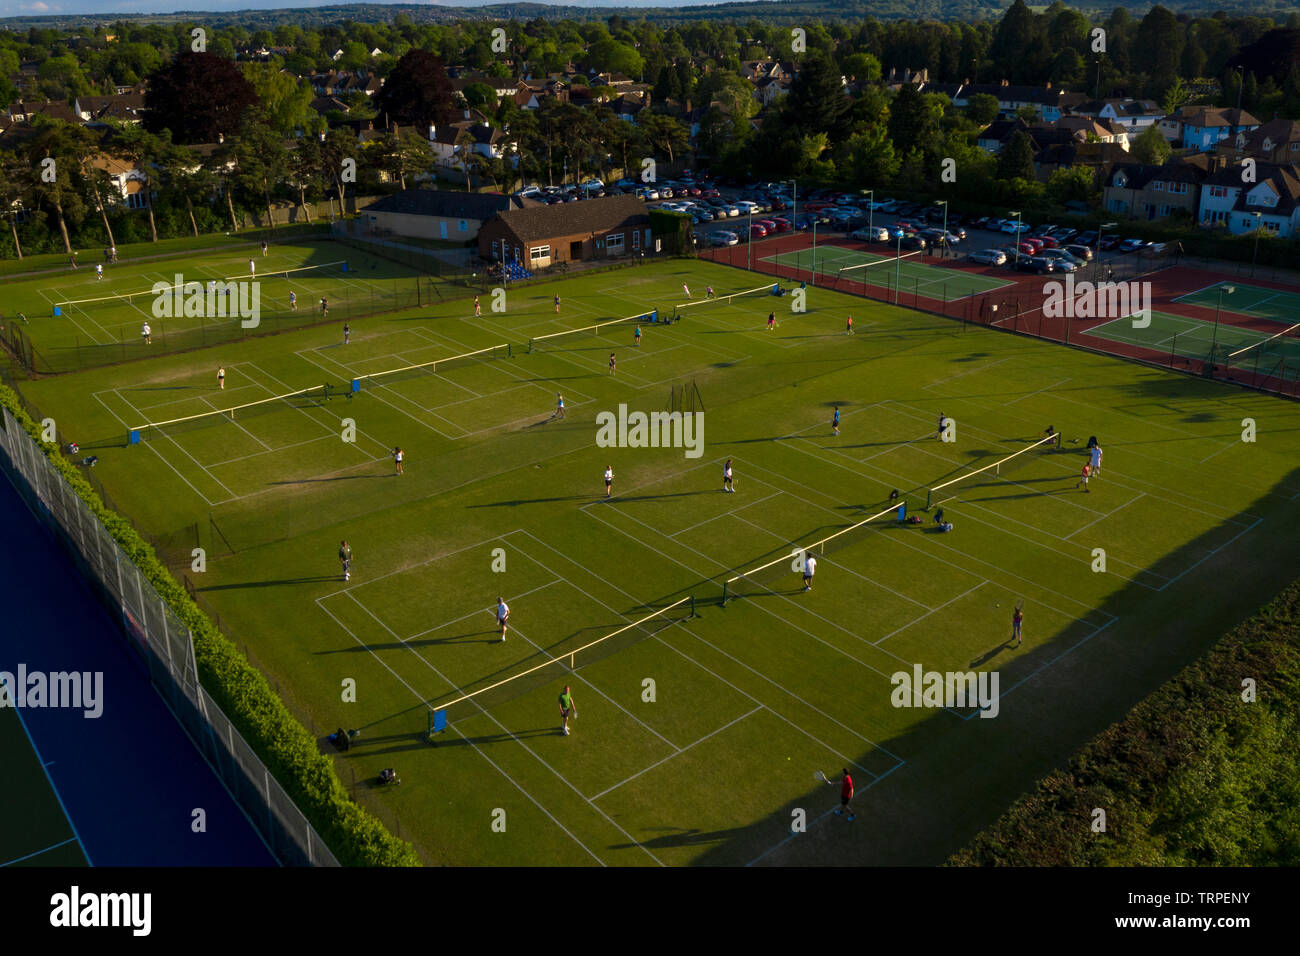 Corte de césped inglés club de tenis desde un avión no tripulado, Oxford, Inglaterra Foto de stock